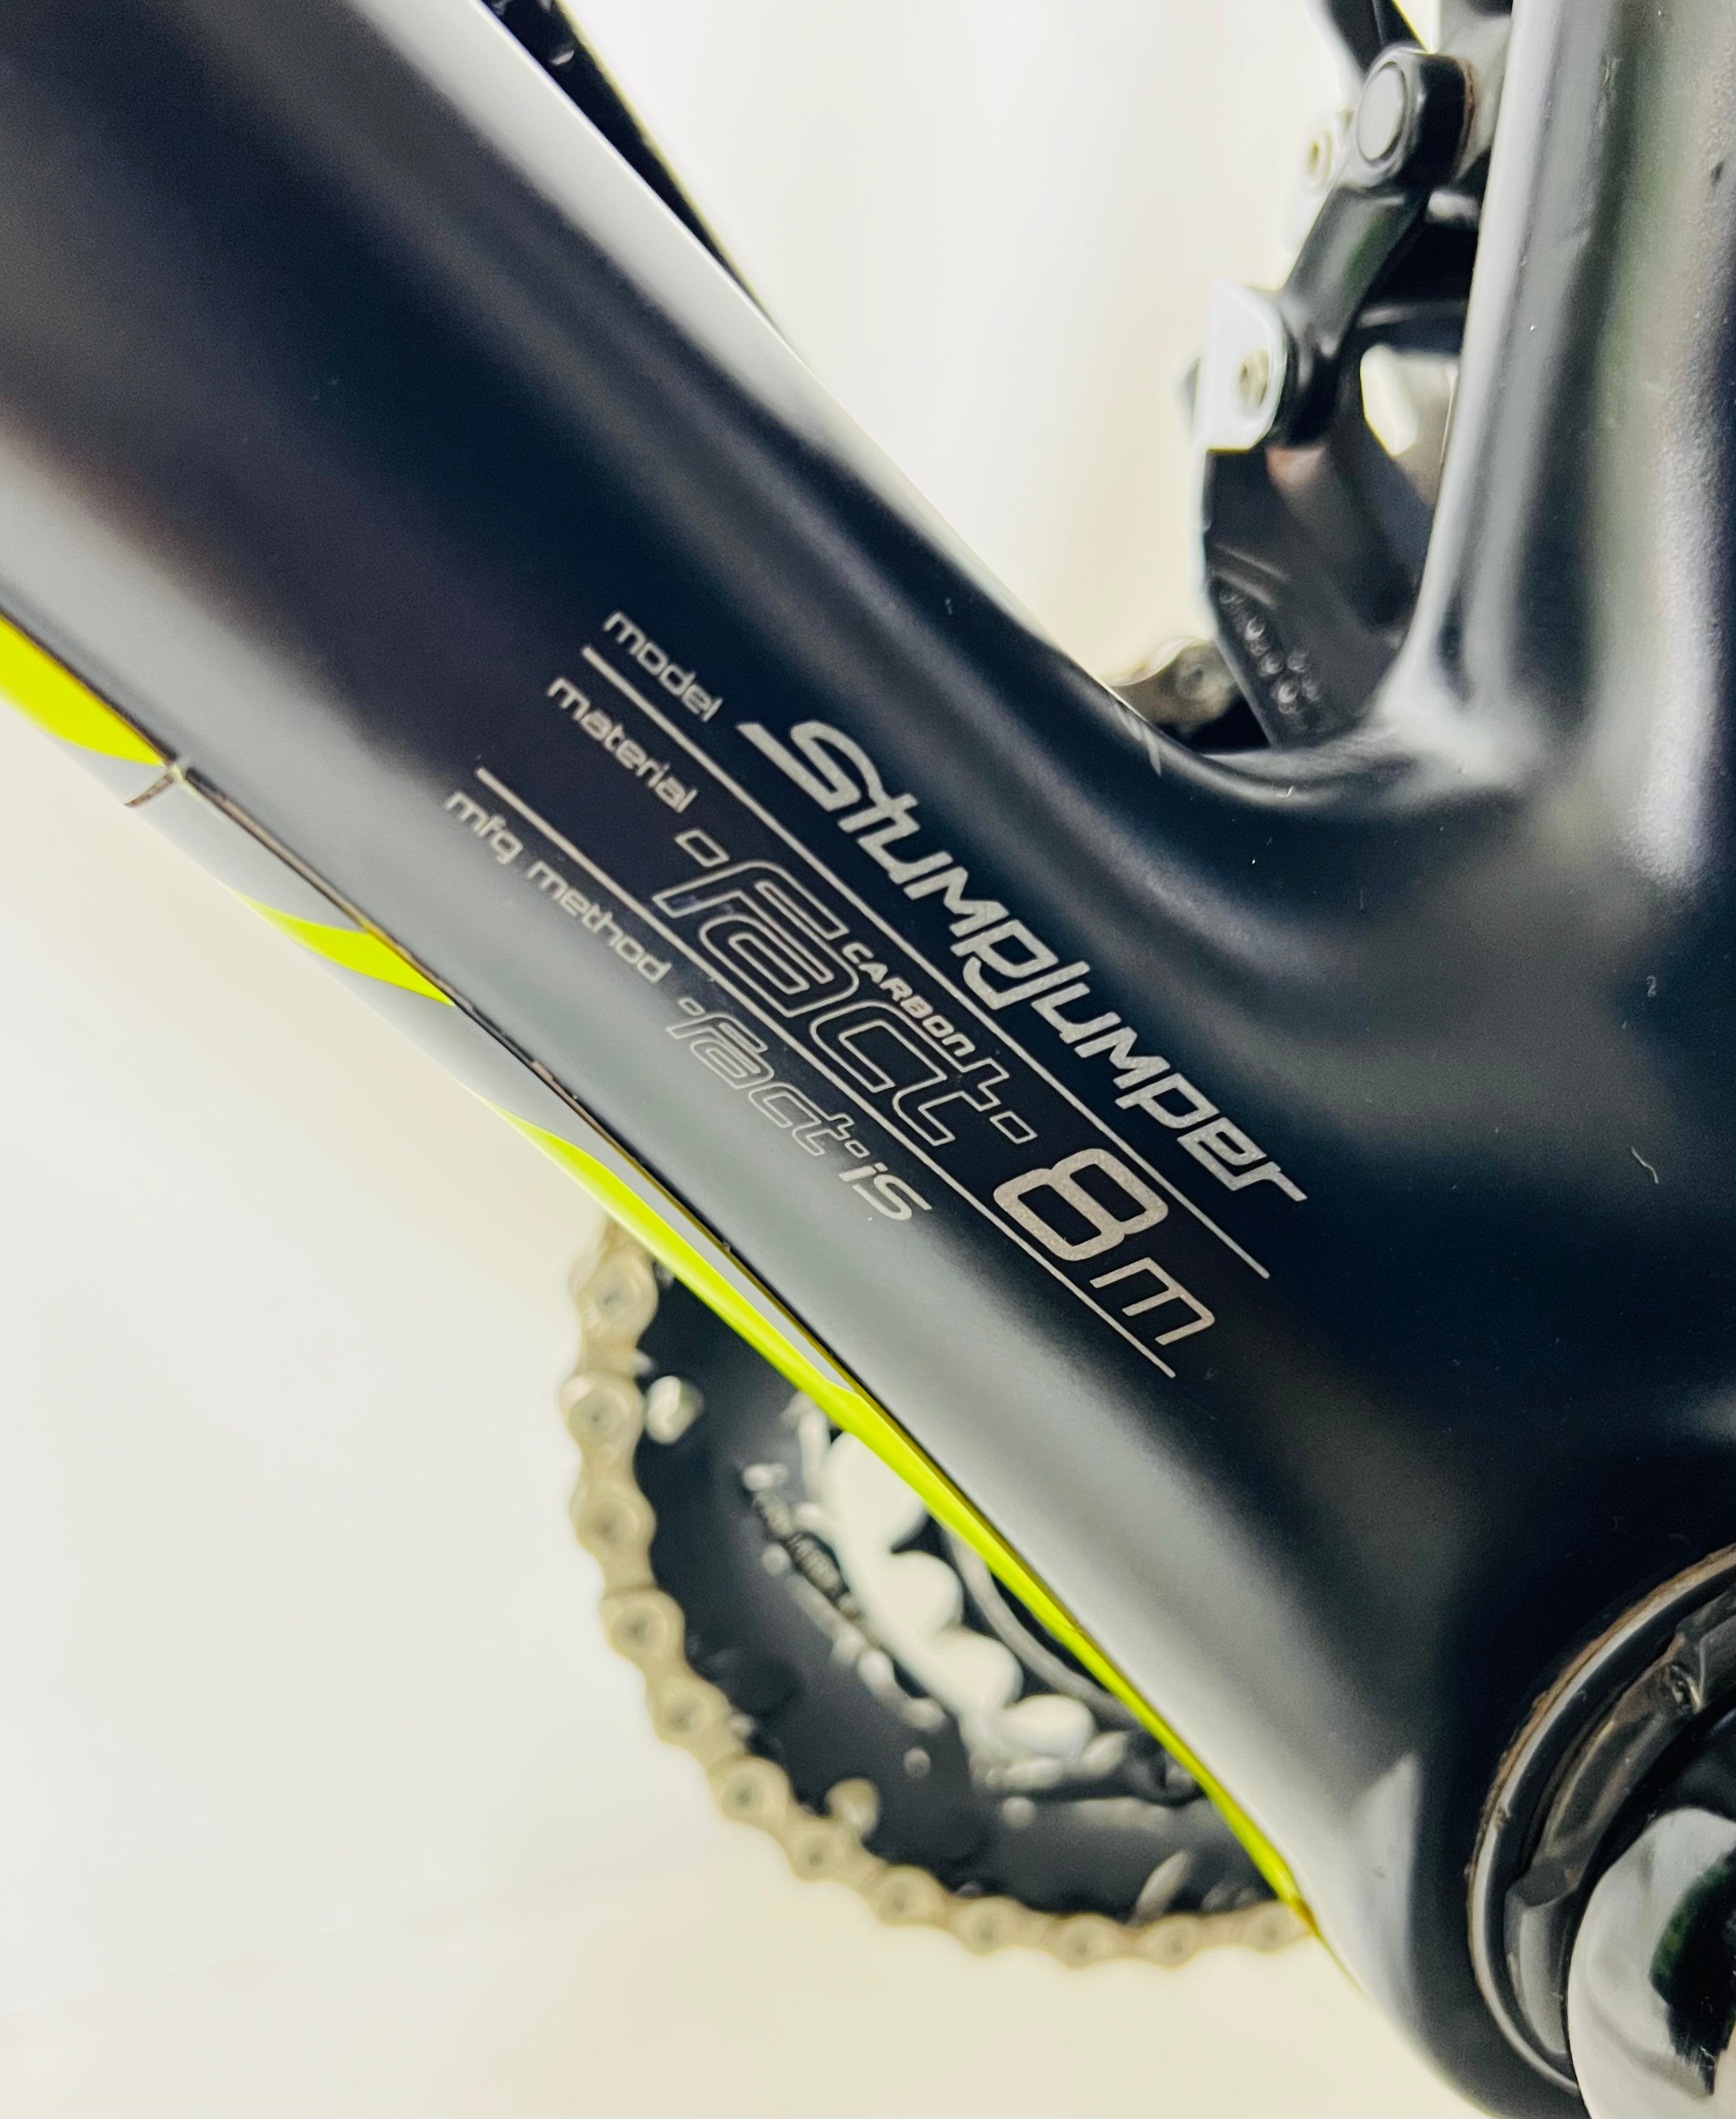 Specialized Stumpjumper 29er, Carbon Fiber Hardtail Mountain Bike-2013, Large